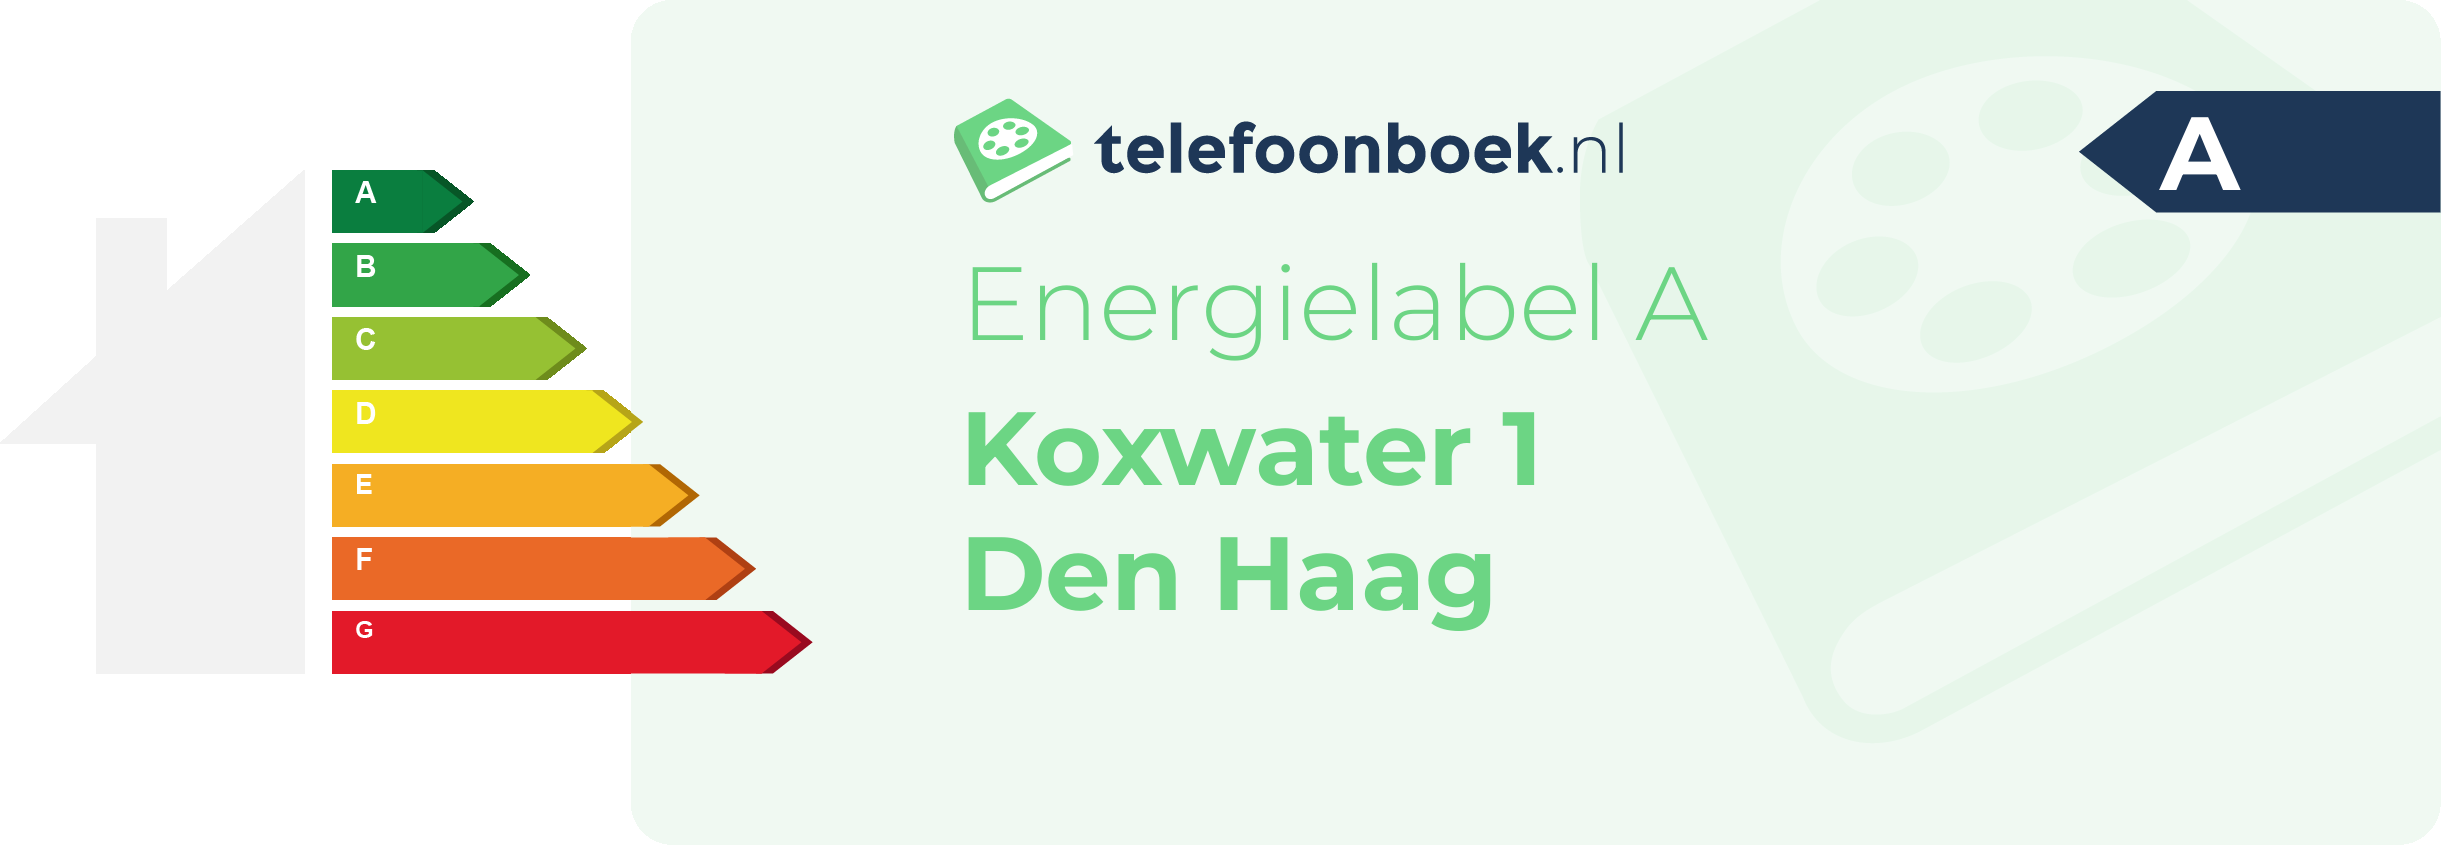 Energielabel Koxwater 1 Den Haag